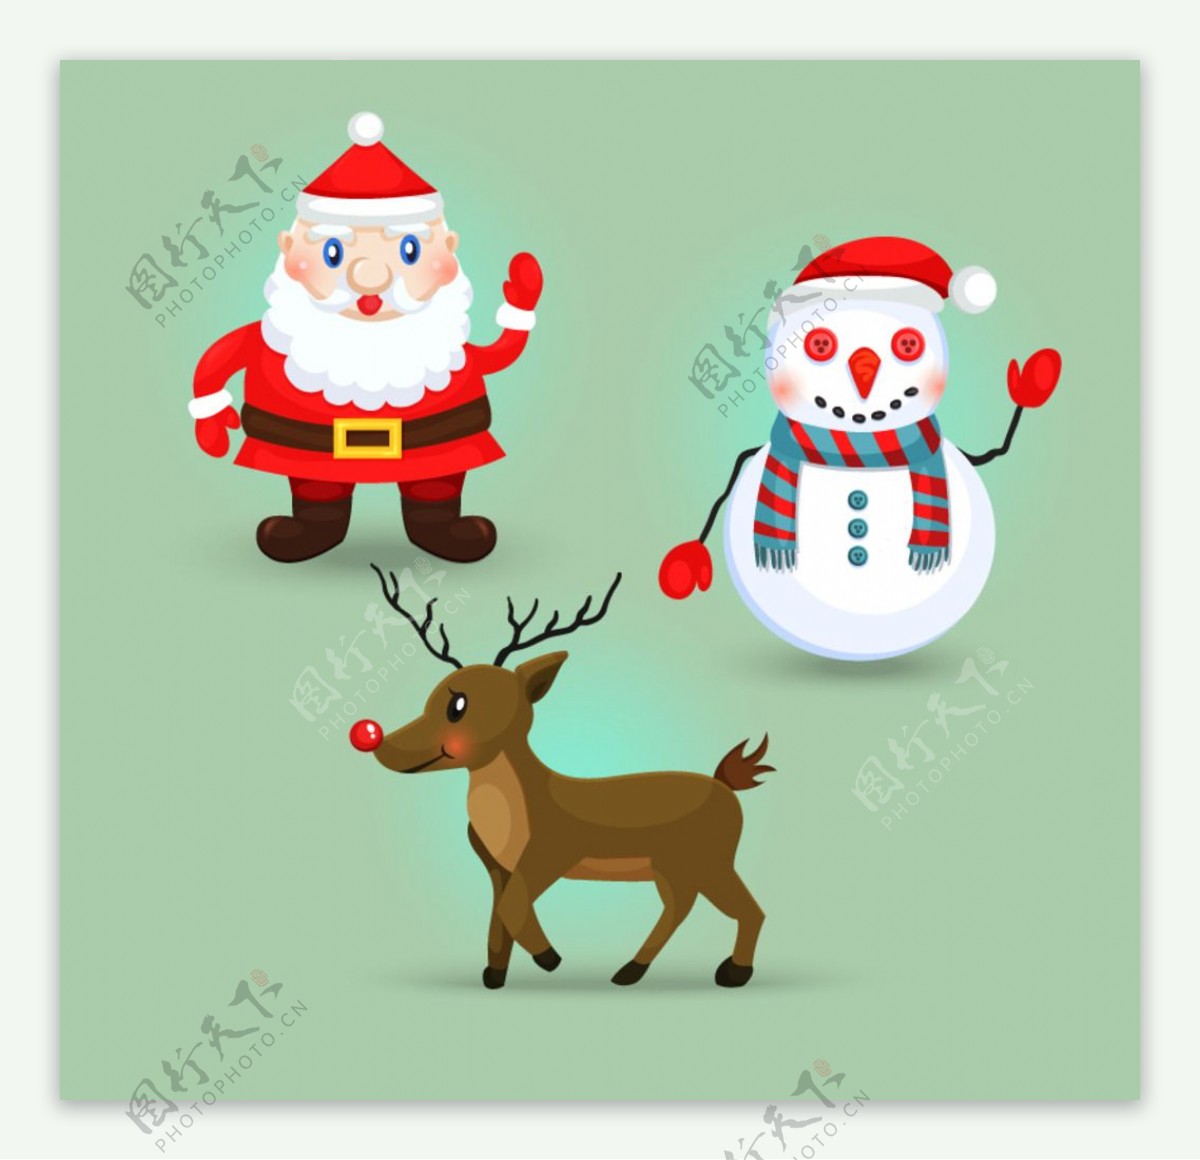 圣诞老人雪人与驯鹿矢量素材